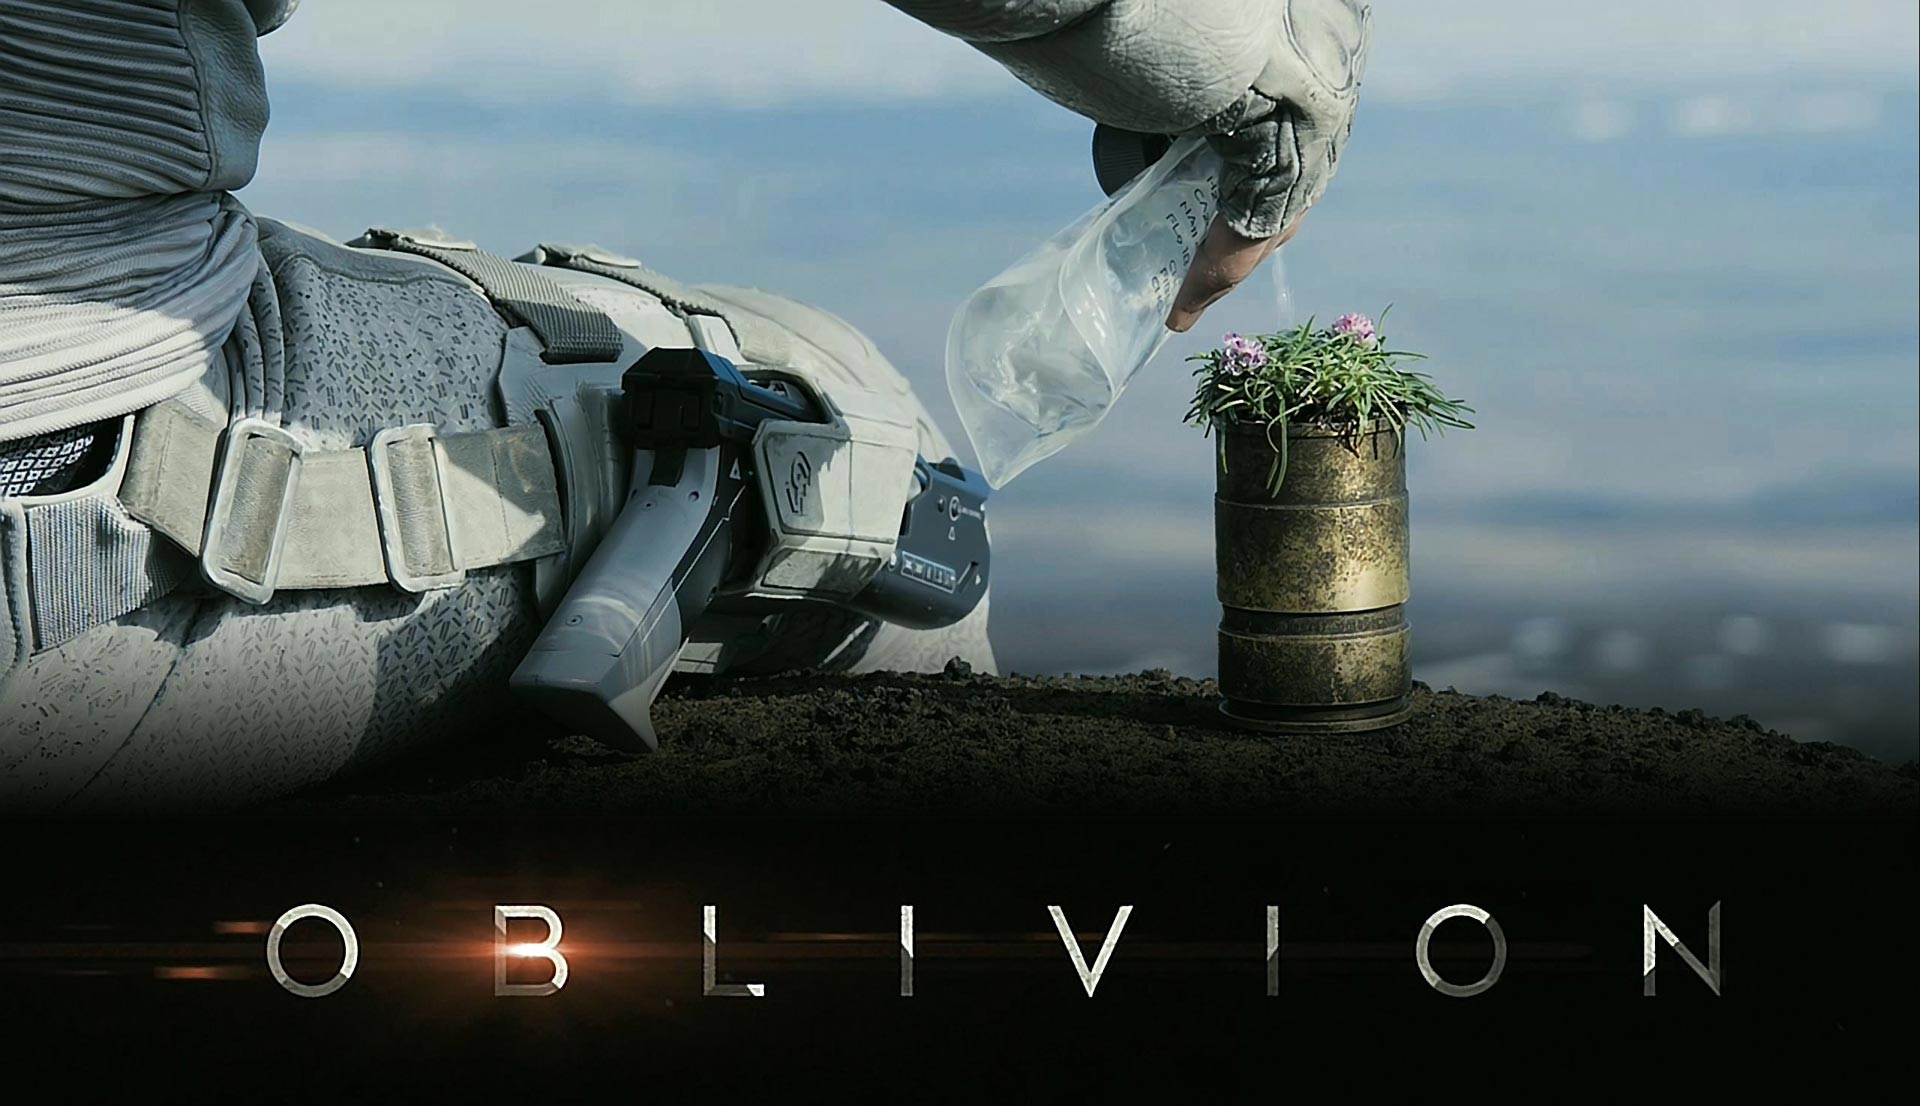 Oblivion 2013 Full Movie Online Streaming - YouTube